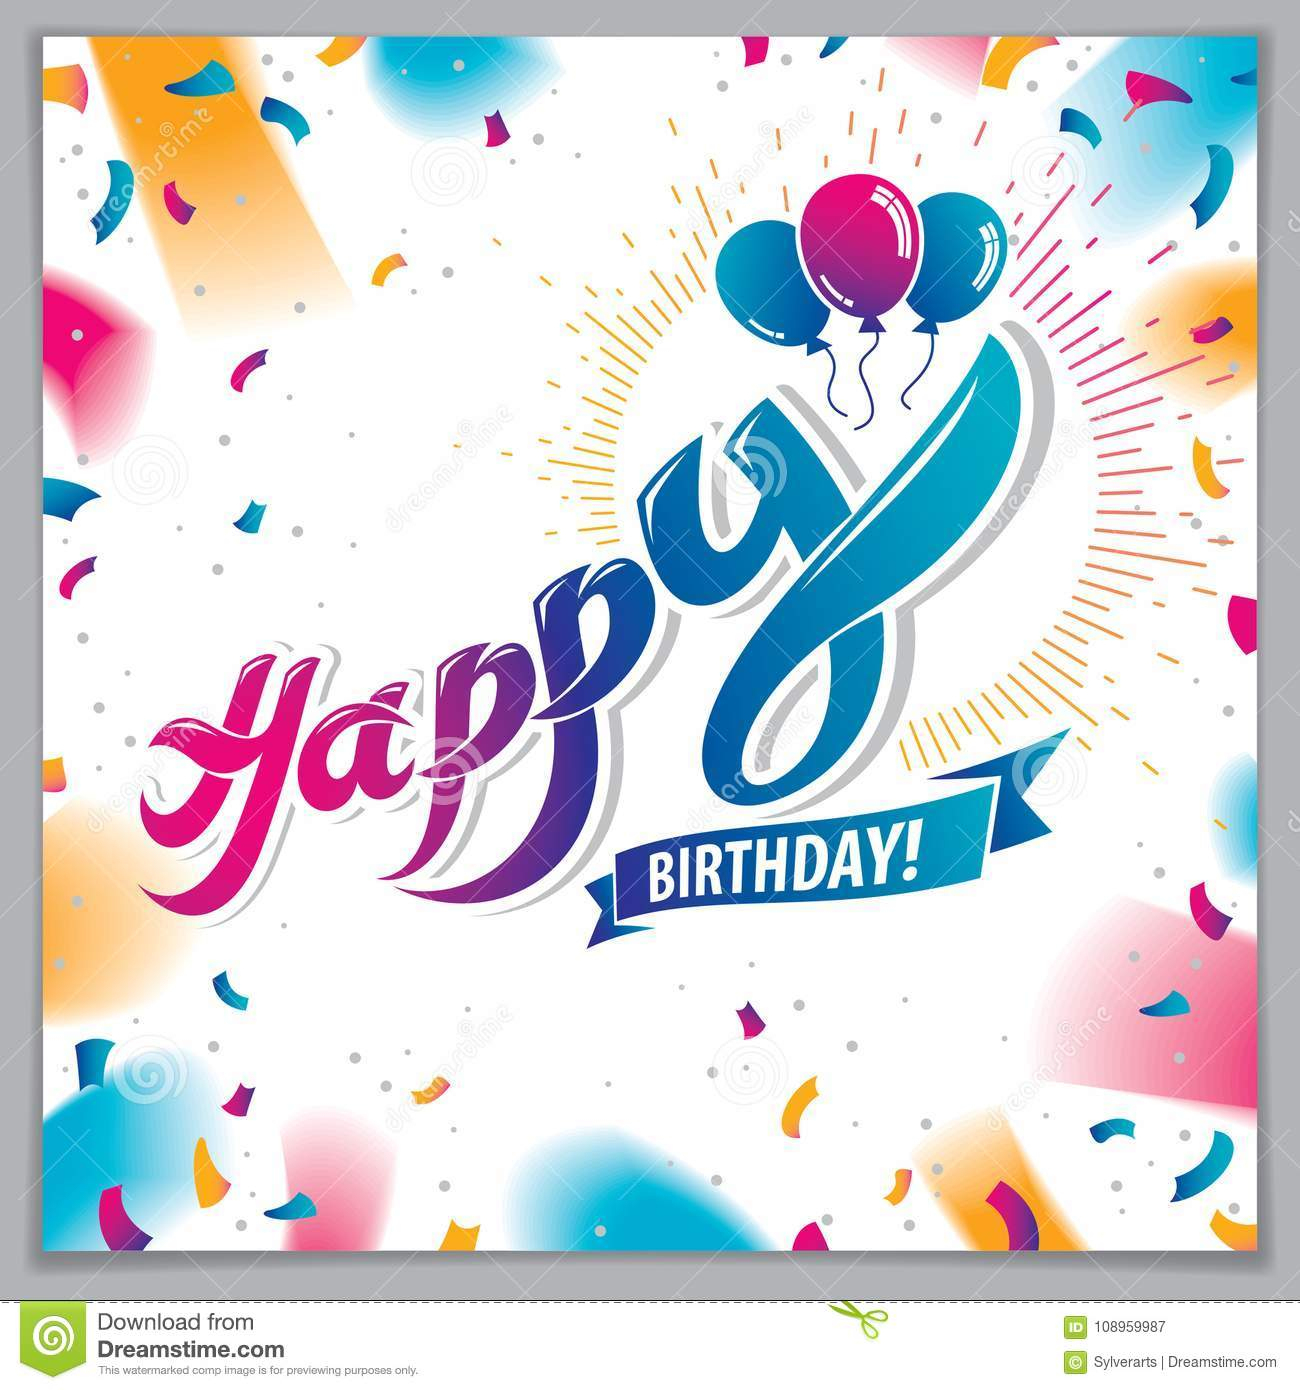 Geburtstagsgrußkarten-Vektordesign Schließt Schönes Letteri bestimmt für Geburtstagsglückwunschkarten